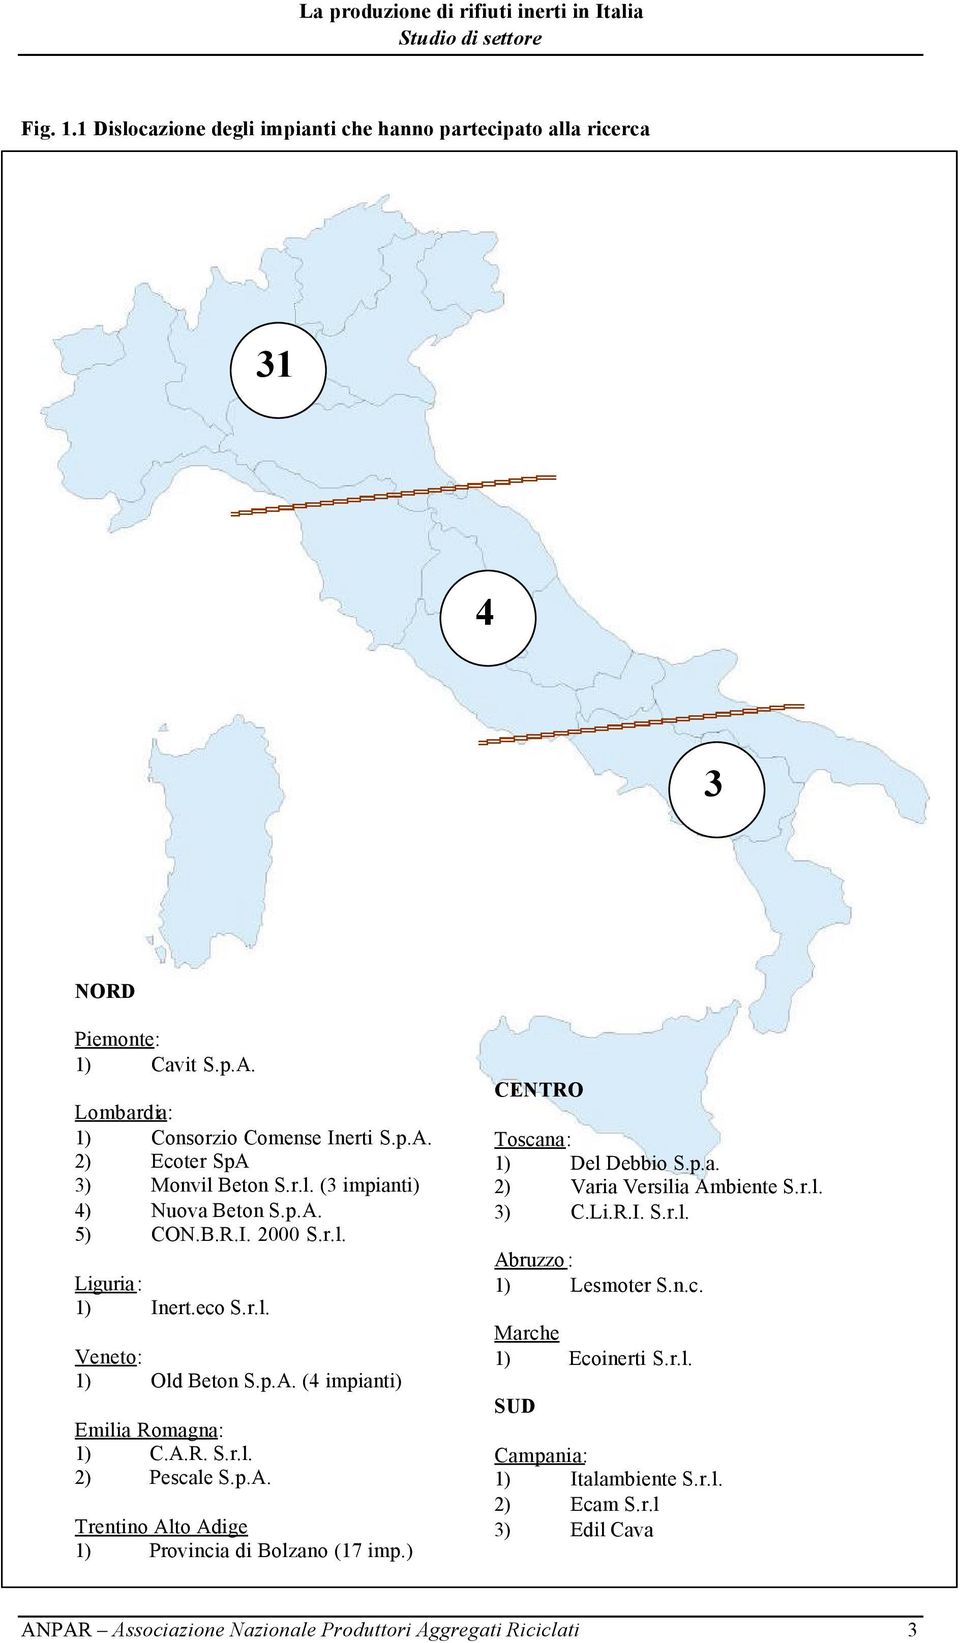 p.A. Trentino Alto Adige 1) Provincia di Bolzano (17 imp.) CENTRO Toscana: 1) Del Debbio S.p.a. 2) Varia Versilia Ambiente S.r.l. 3) C.Li.R.I. S.r.l. Abruzzo : 1) Lesmoter S.n.c. Marche 1) Ecoinerti S.